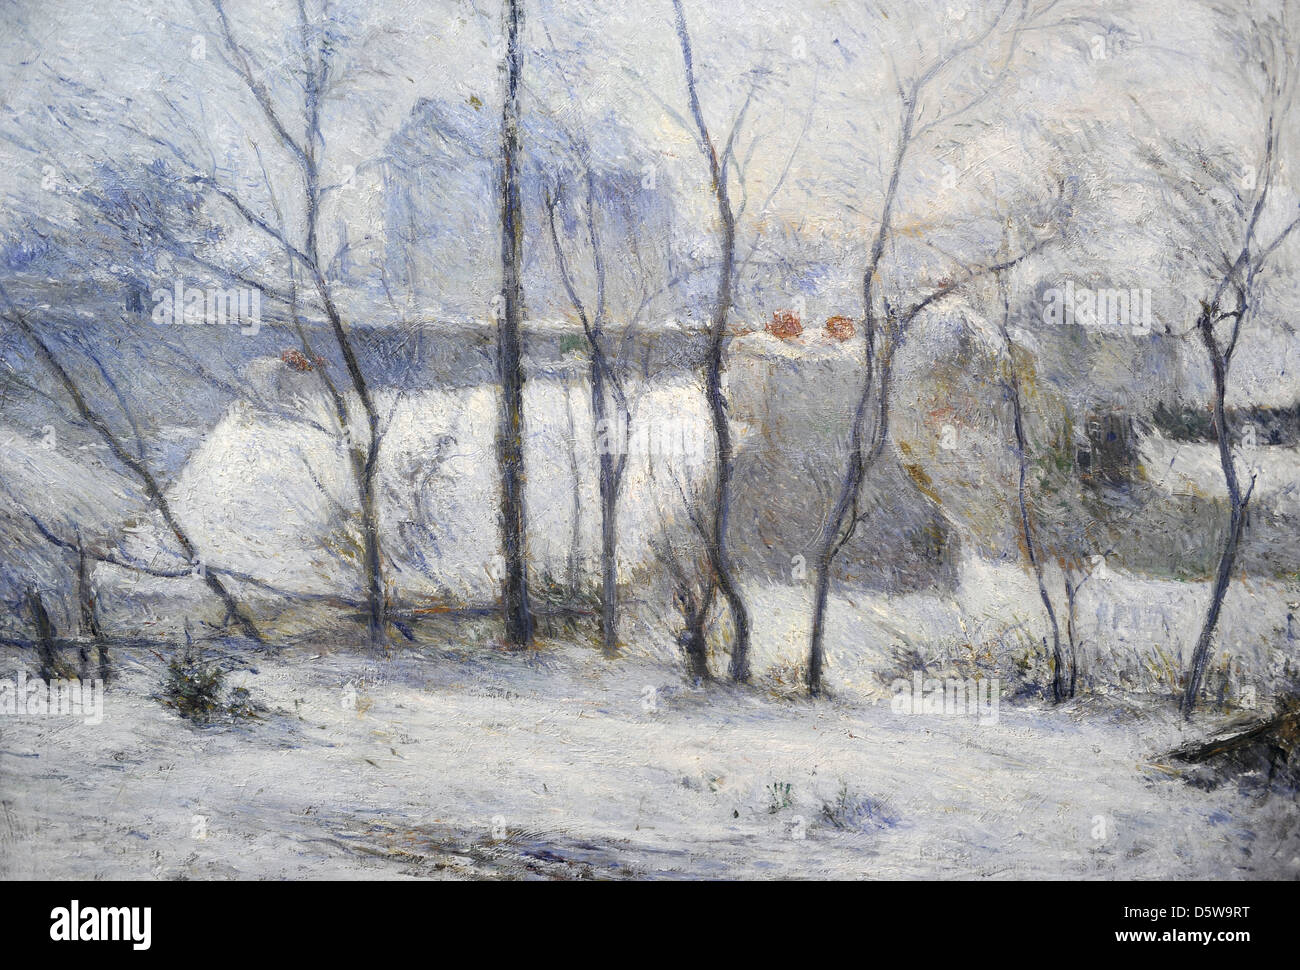 Paul Gauguin (1848-1903). Le peintre français. Paysage d'hiver, 1879. Huile sur toile, Musée des beaux-arts de Budapest. La Hongrie. Banque D'Images